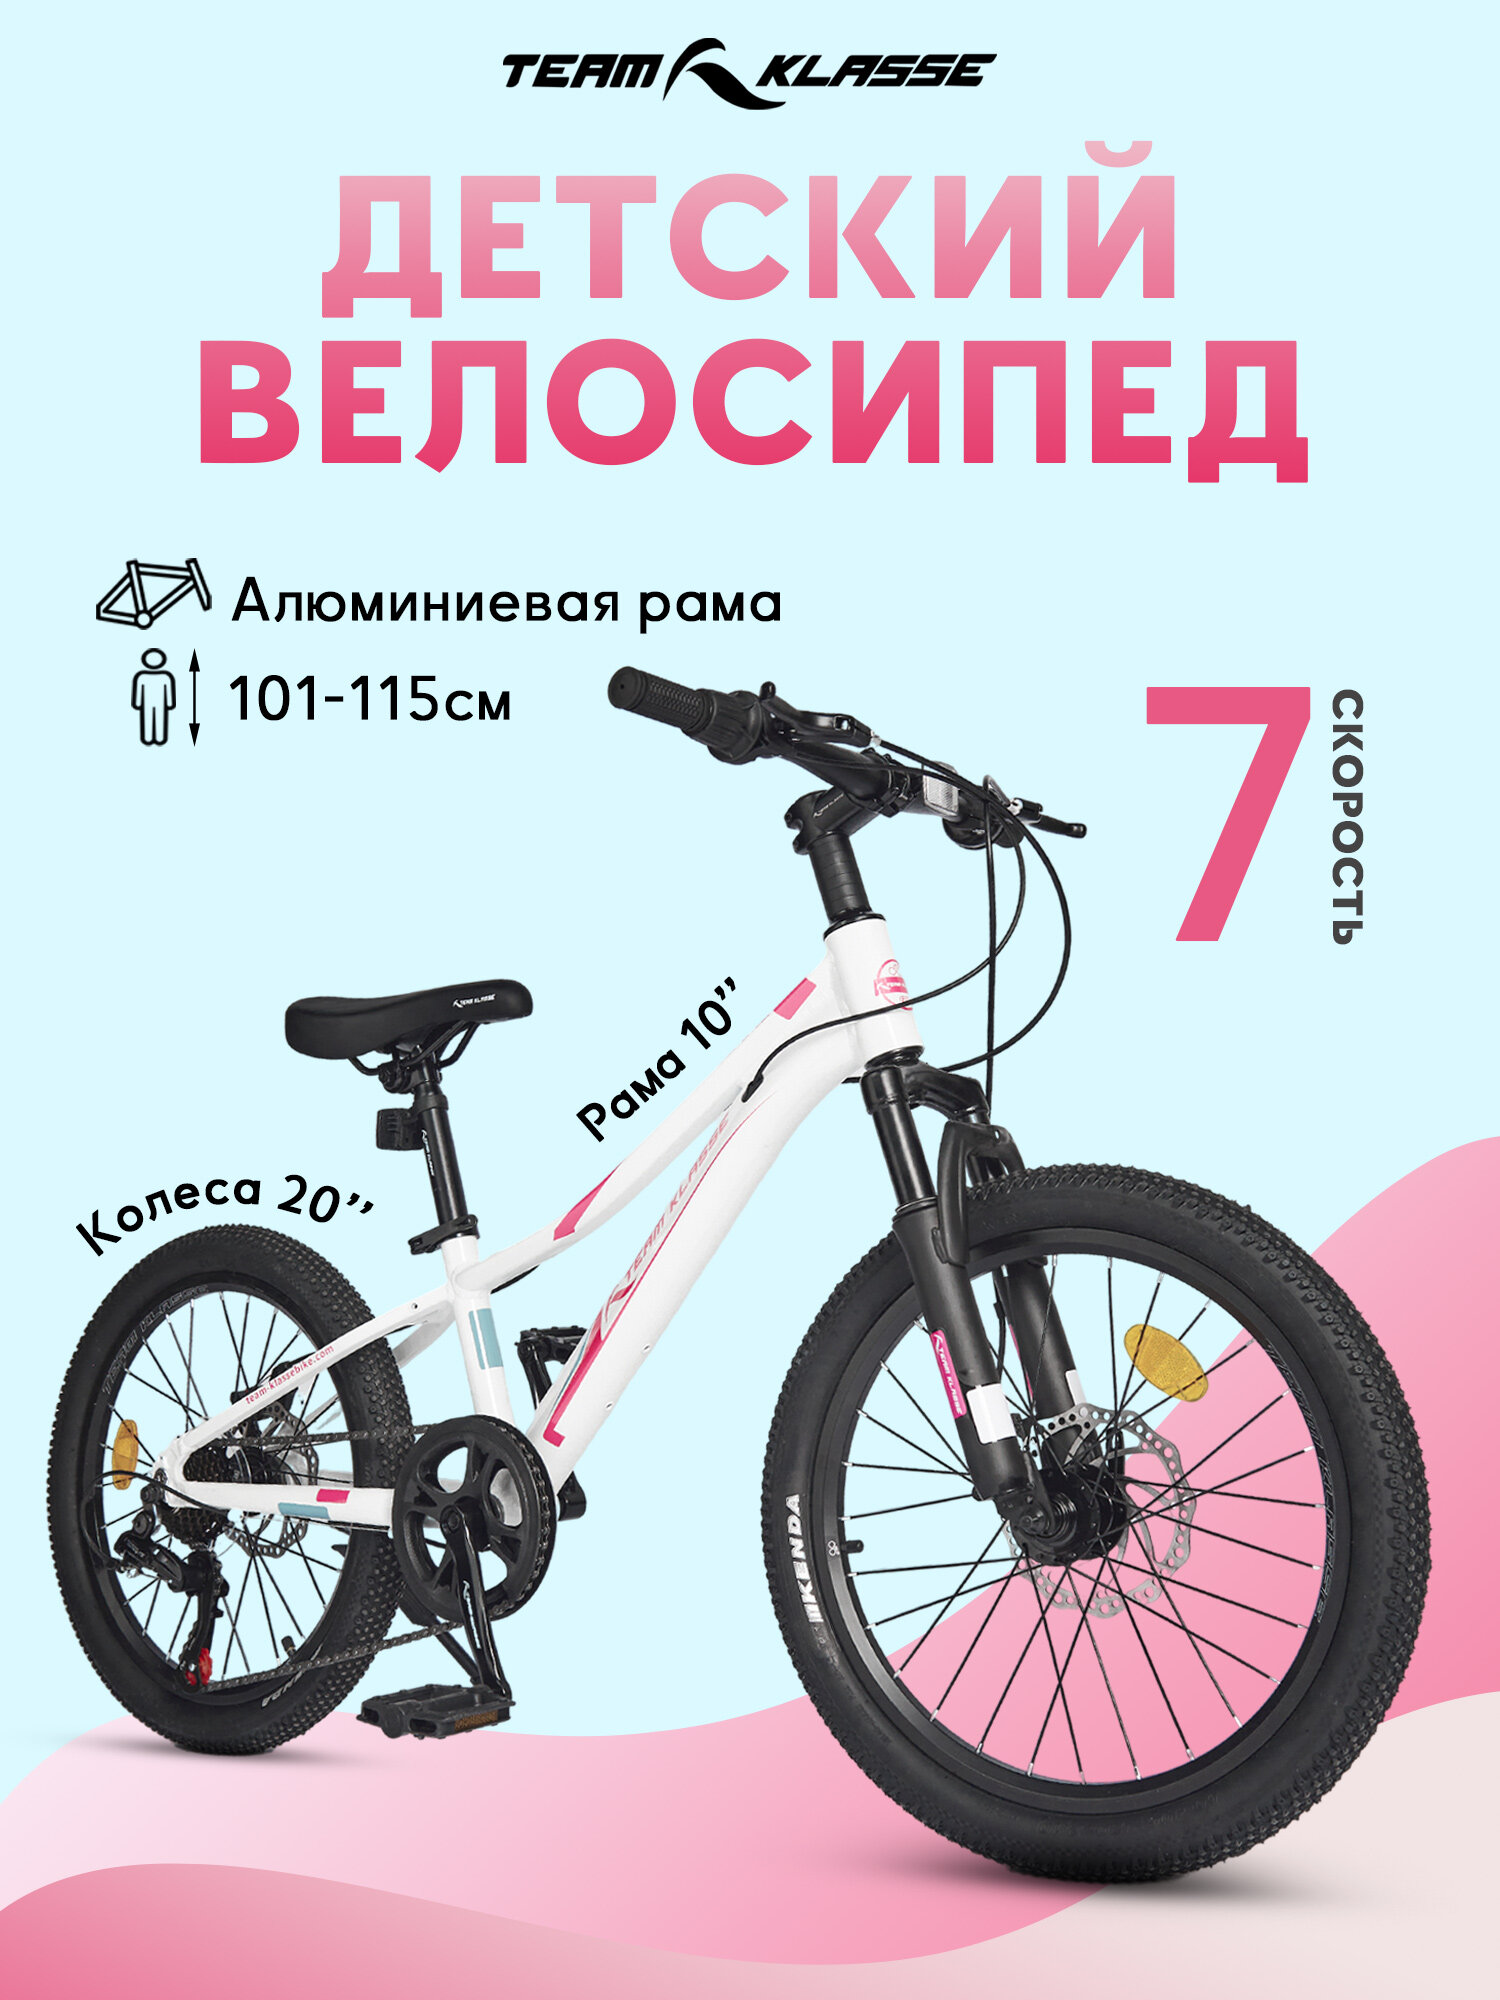 Горный детский велосипед Team Klasse F-4-A, белый. розовый, диаметр колес 20 дюймов